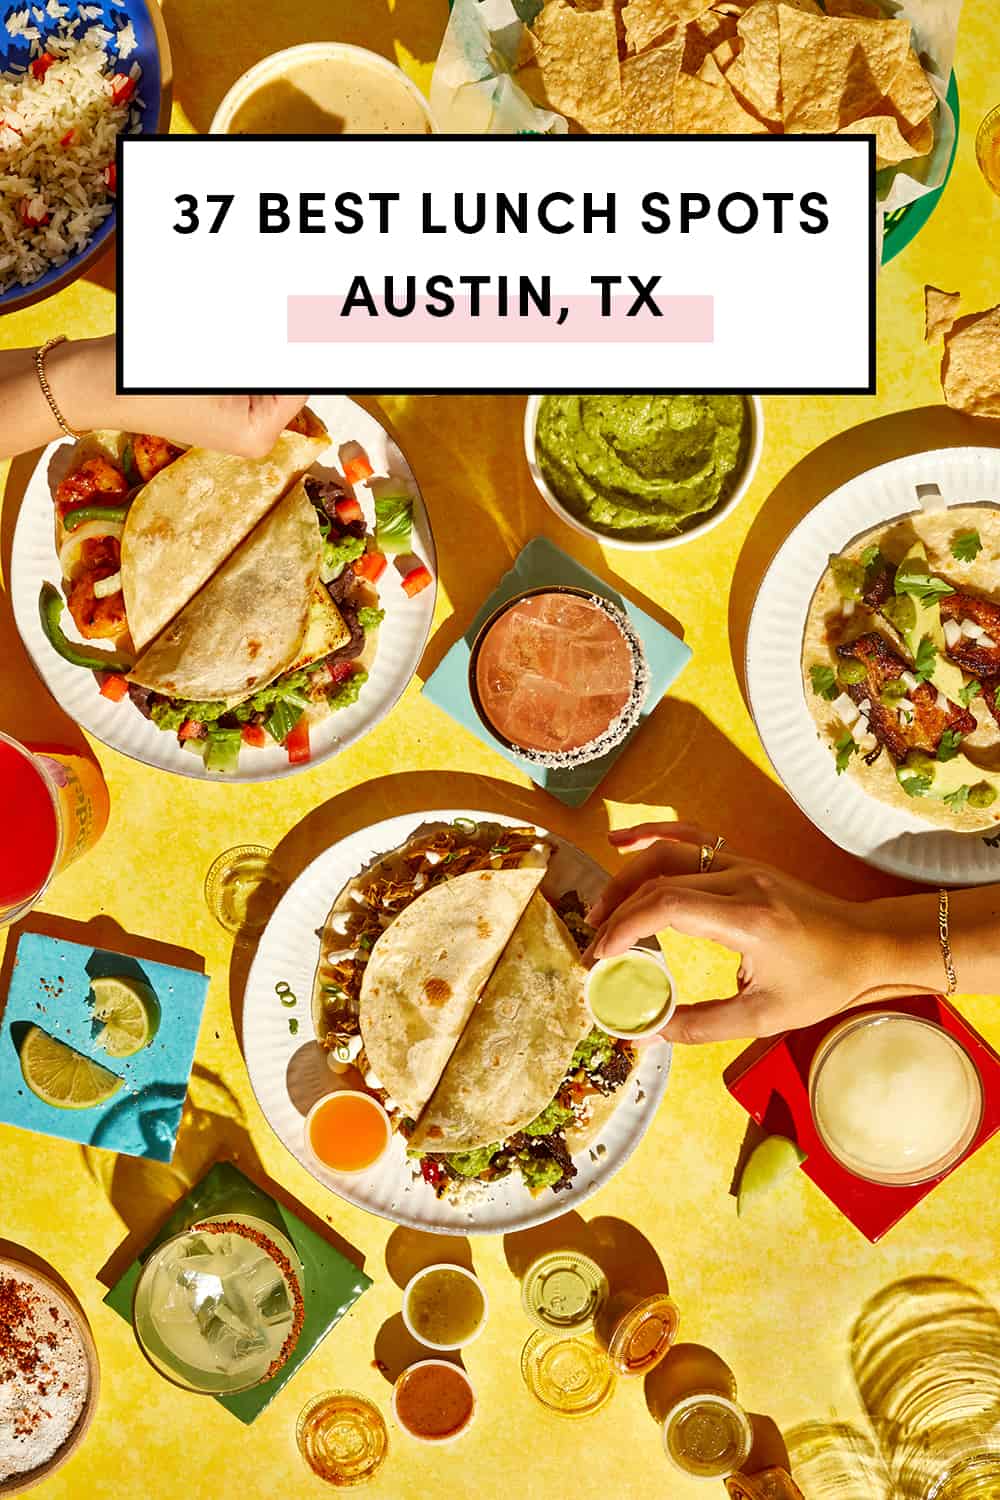 Best lunch restaurants in Austin Texas